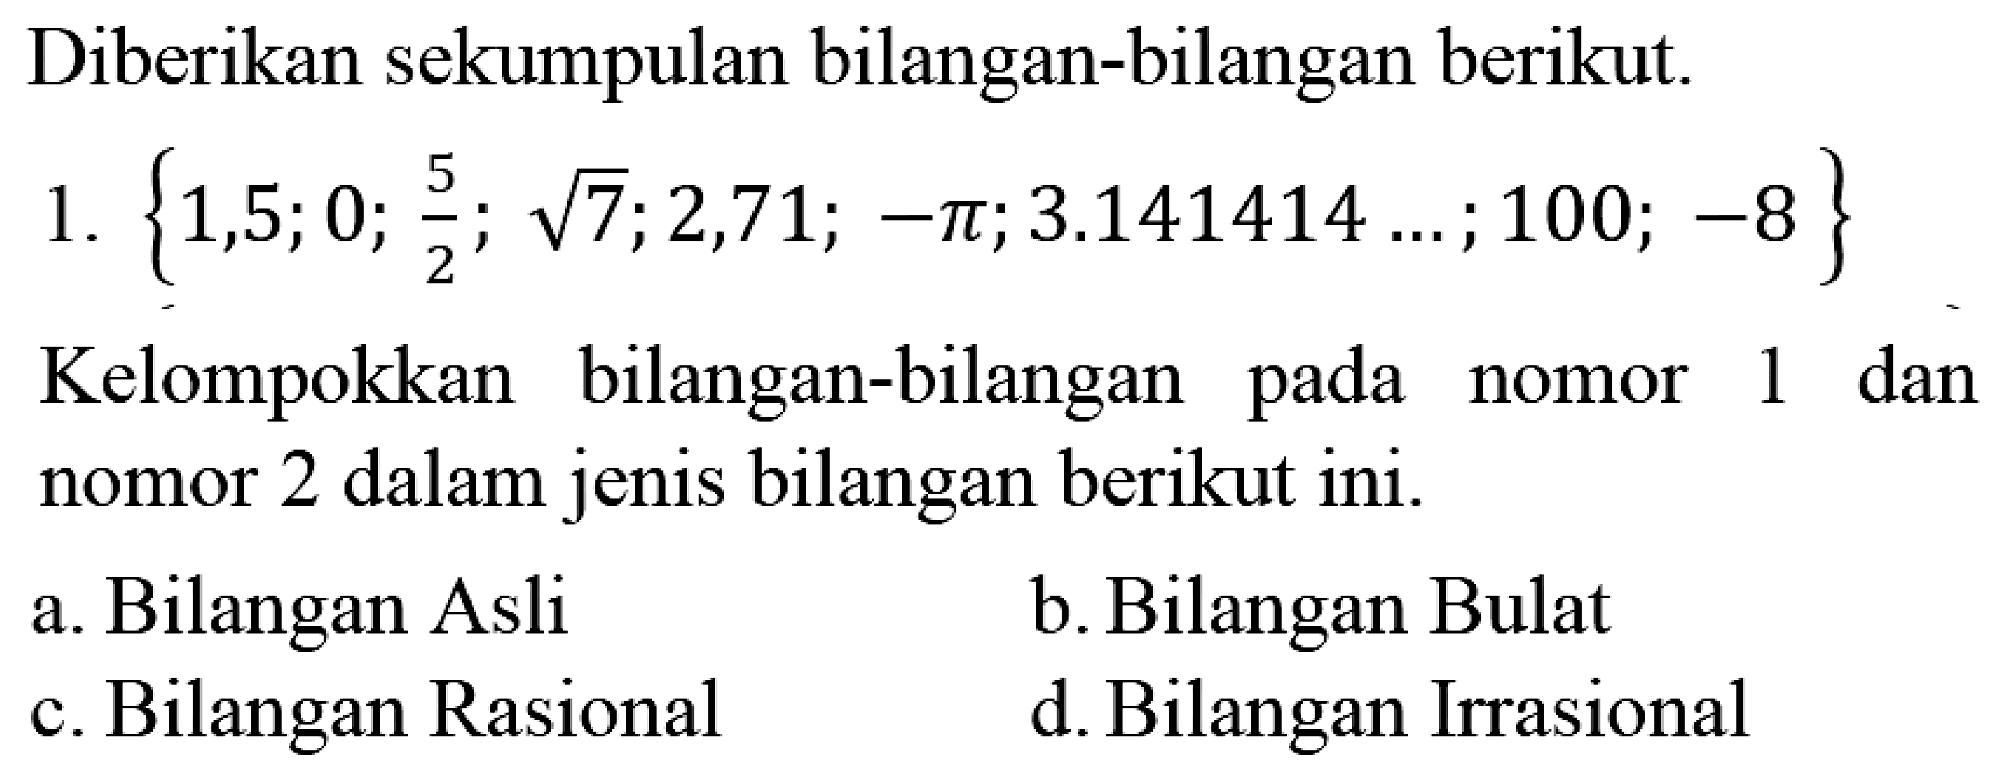 Diberikan sekumpulan bilangan-bilangan berikut.
1.  {1,5 ; 0 ; (5)/(2) ; akar(7) ; 2,71 ;-pi ; 3.141414 ... ; 100 ;-8} 
Kelompokkan bilangan-bilangan pada nomor 1 dan nomor 2 dalam jenis bilangan berikut ini.
a. Bilangan Asli
b. Bilangan Bulat
c. Bilangan Rasional
d. Bilangan Irrasional